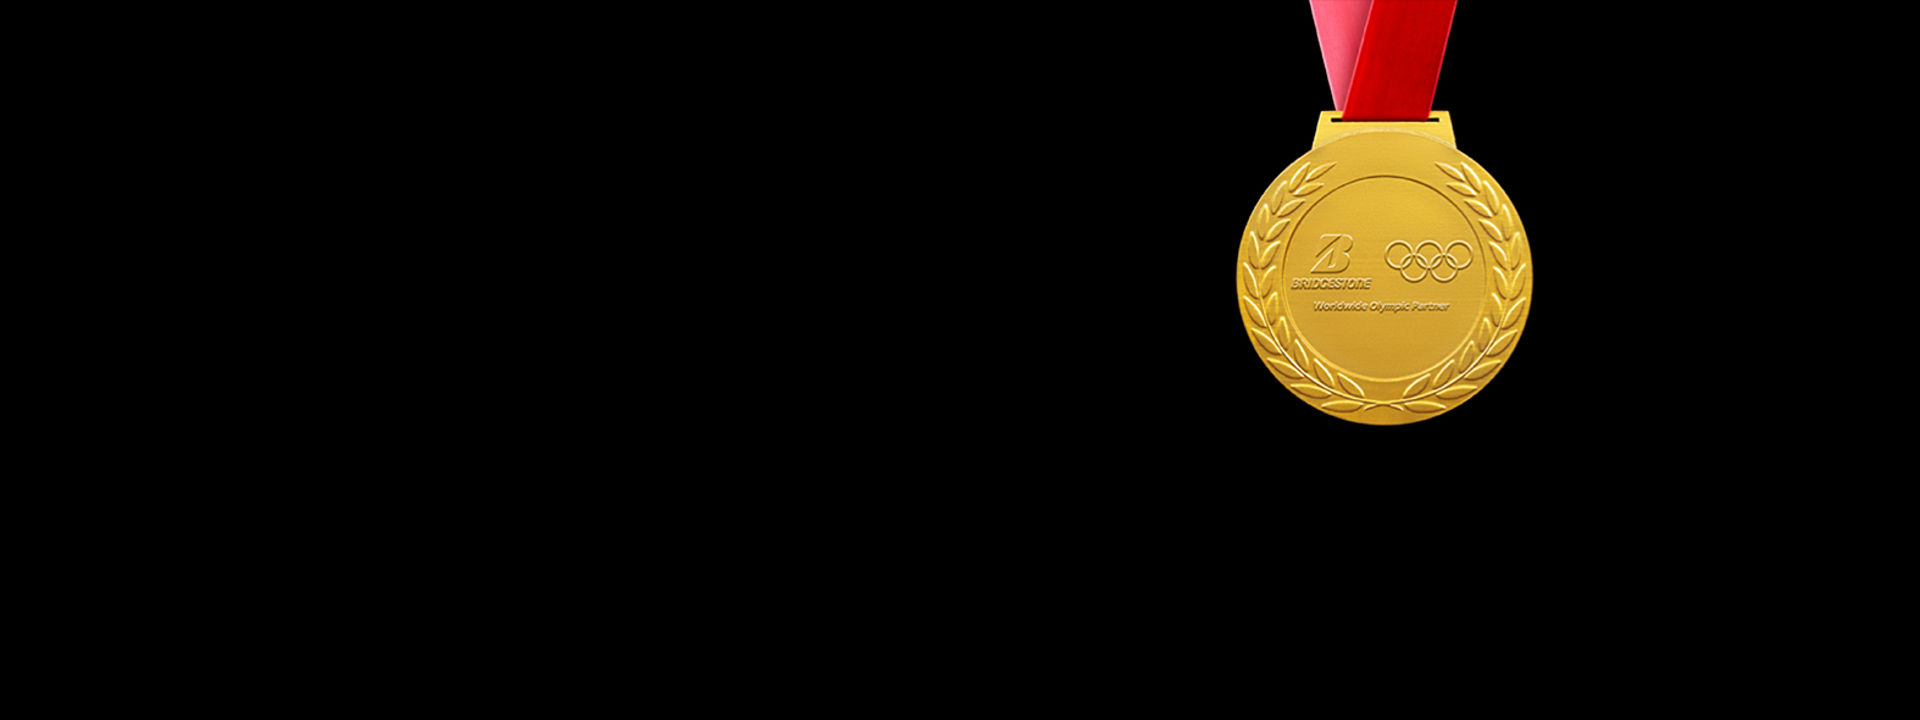 Logo Bridgestone e anelli olimpici su una medaglia d'oro su sfondo nero.